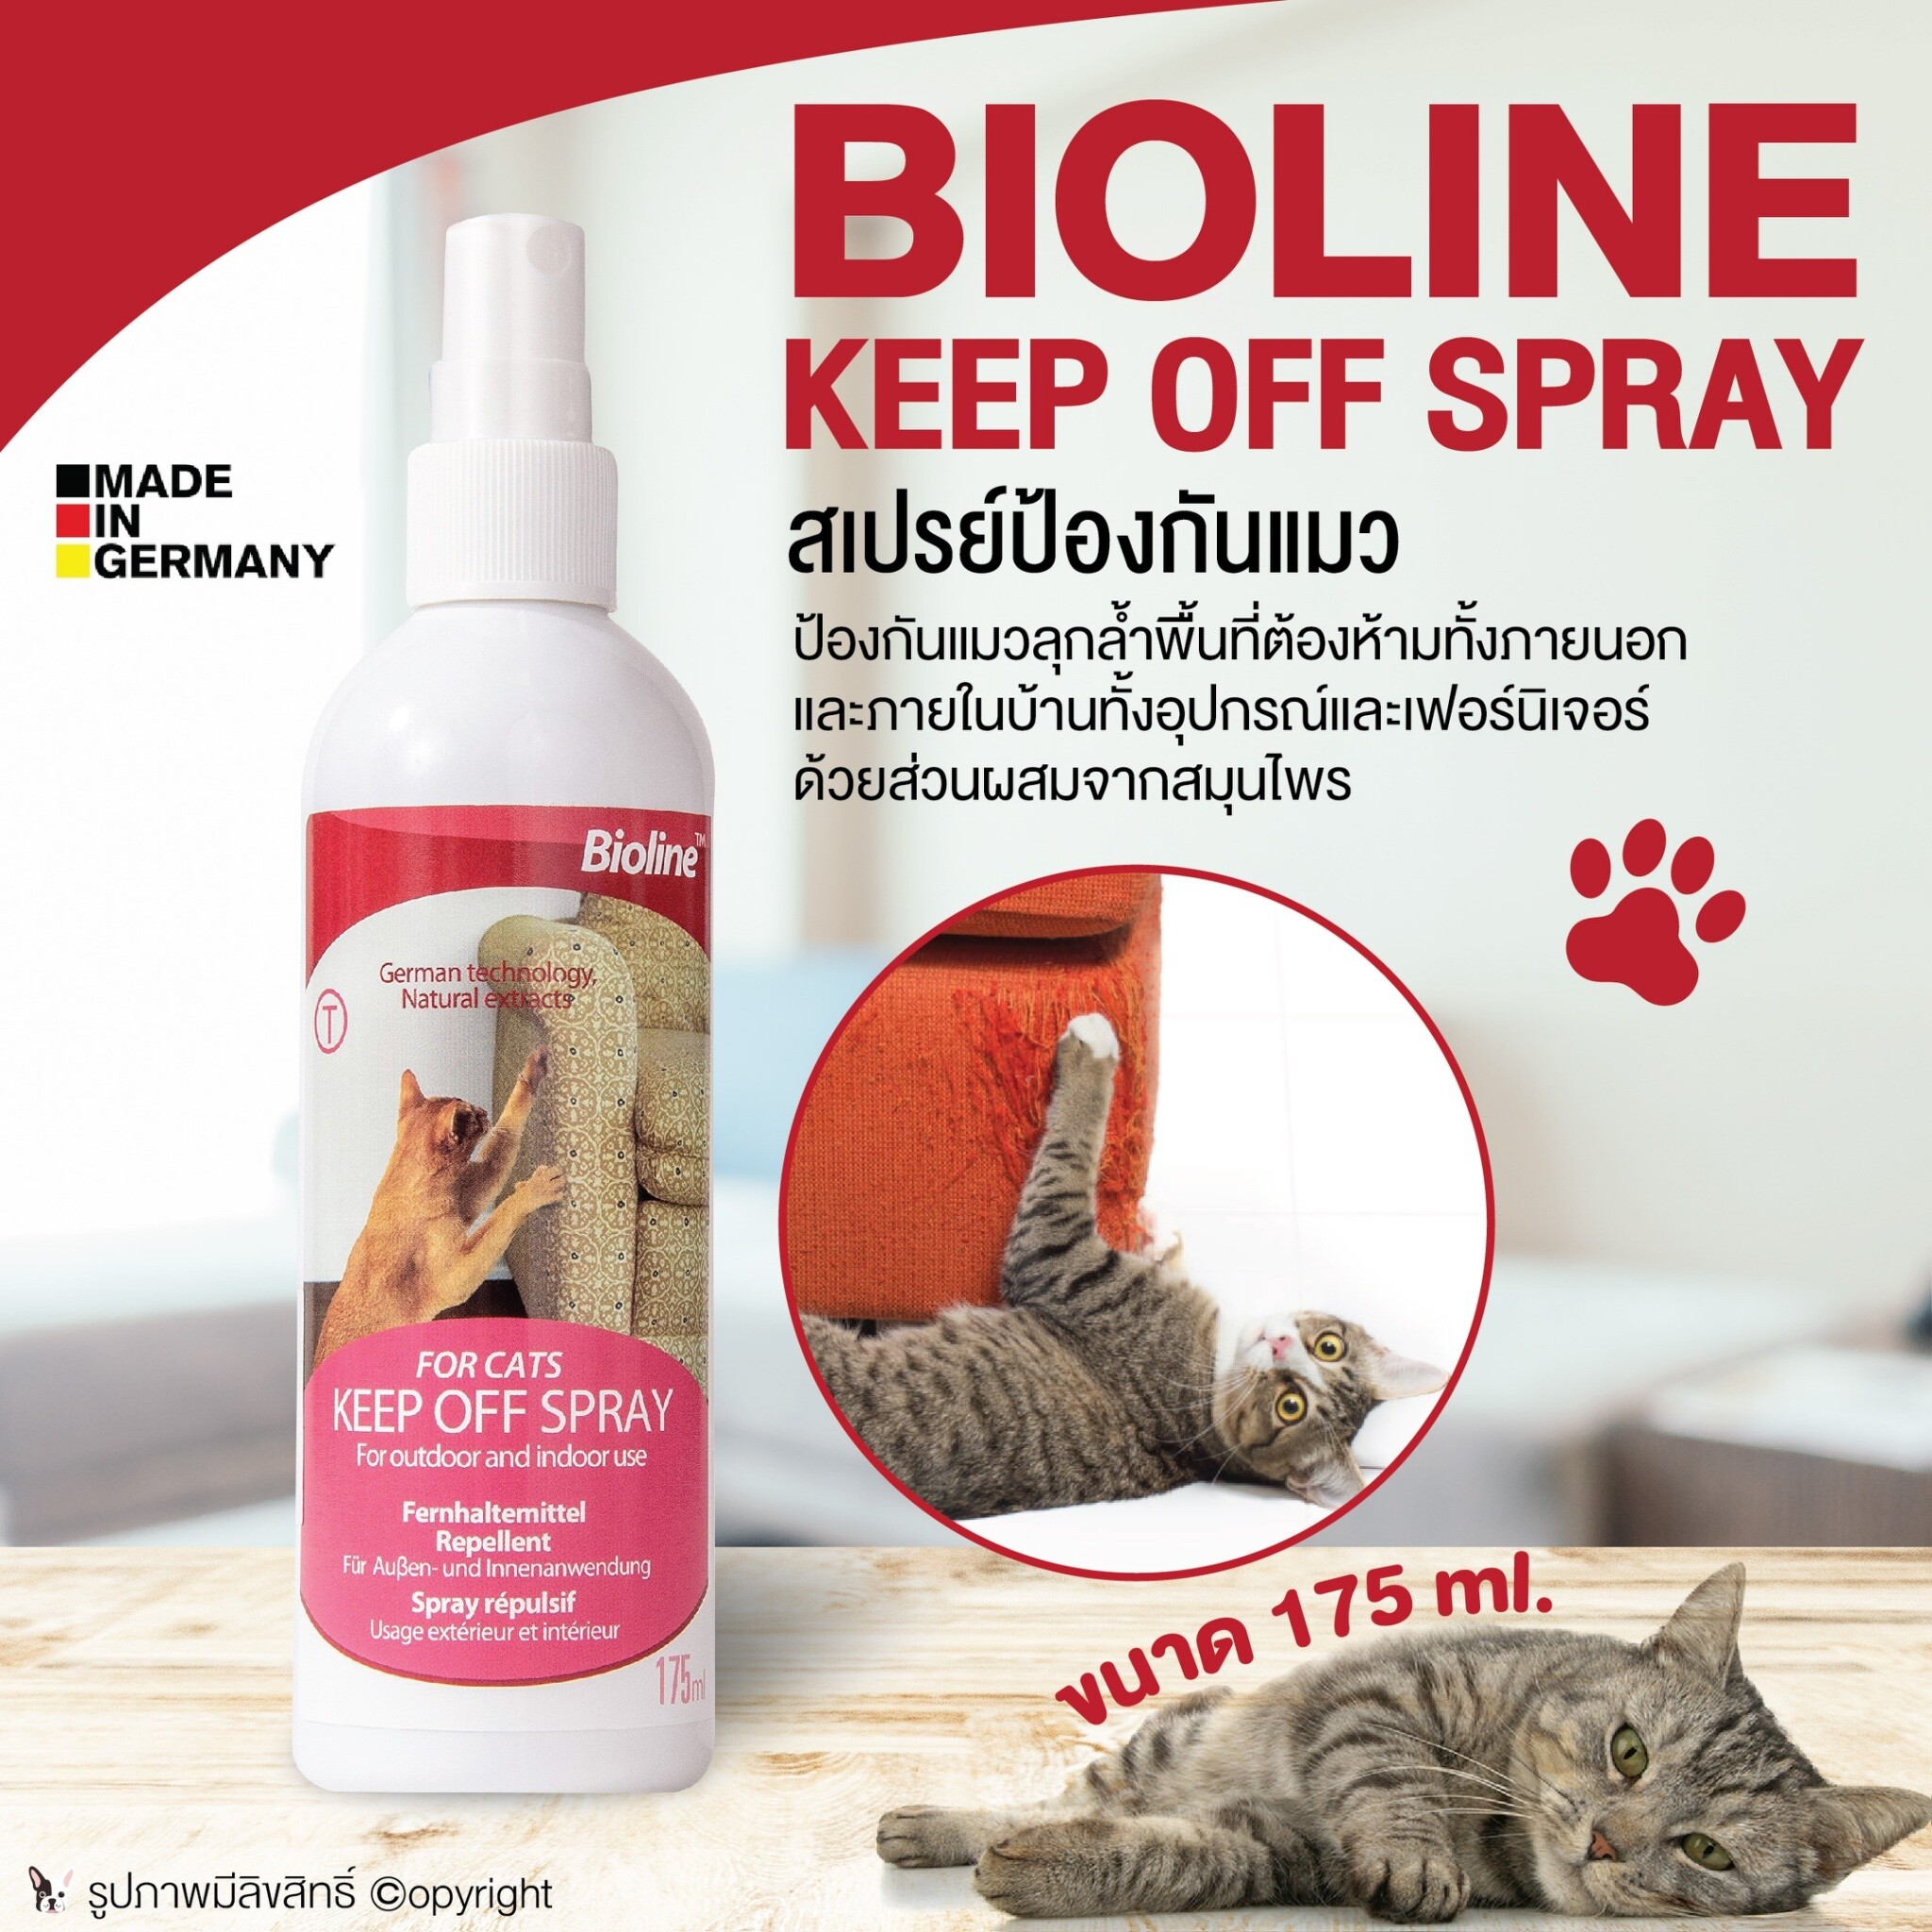 Bioline keep off spray สเปรย์จำกัดพื้นที่แมว ใช้ได้ทั้งภายในบ้านและนอกบ้าน ทั้งอุปกรณ์และเฟอร์นิเจอร์ ขนาด 175 ml โดย Yes Pet Shop